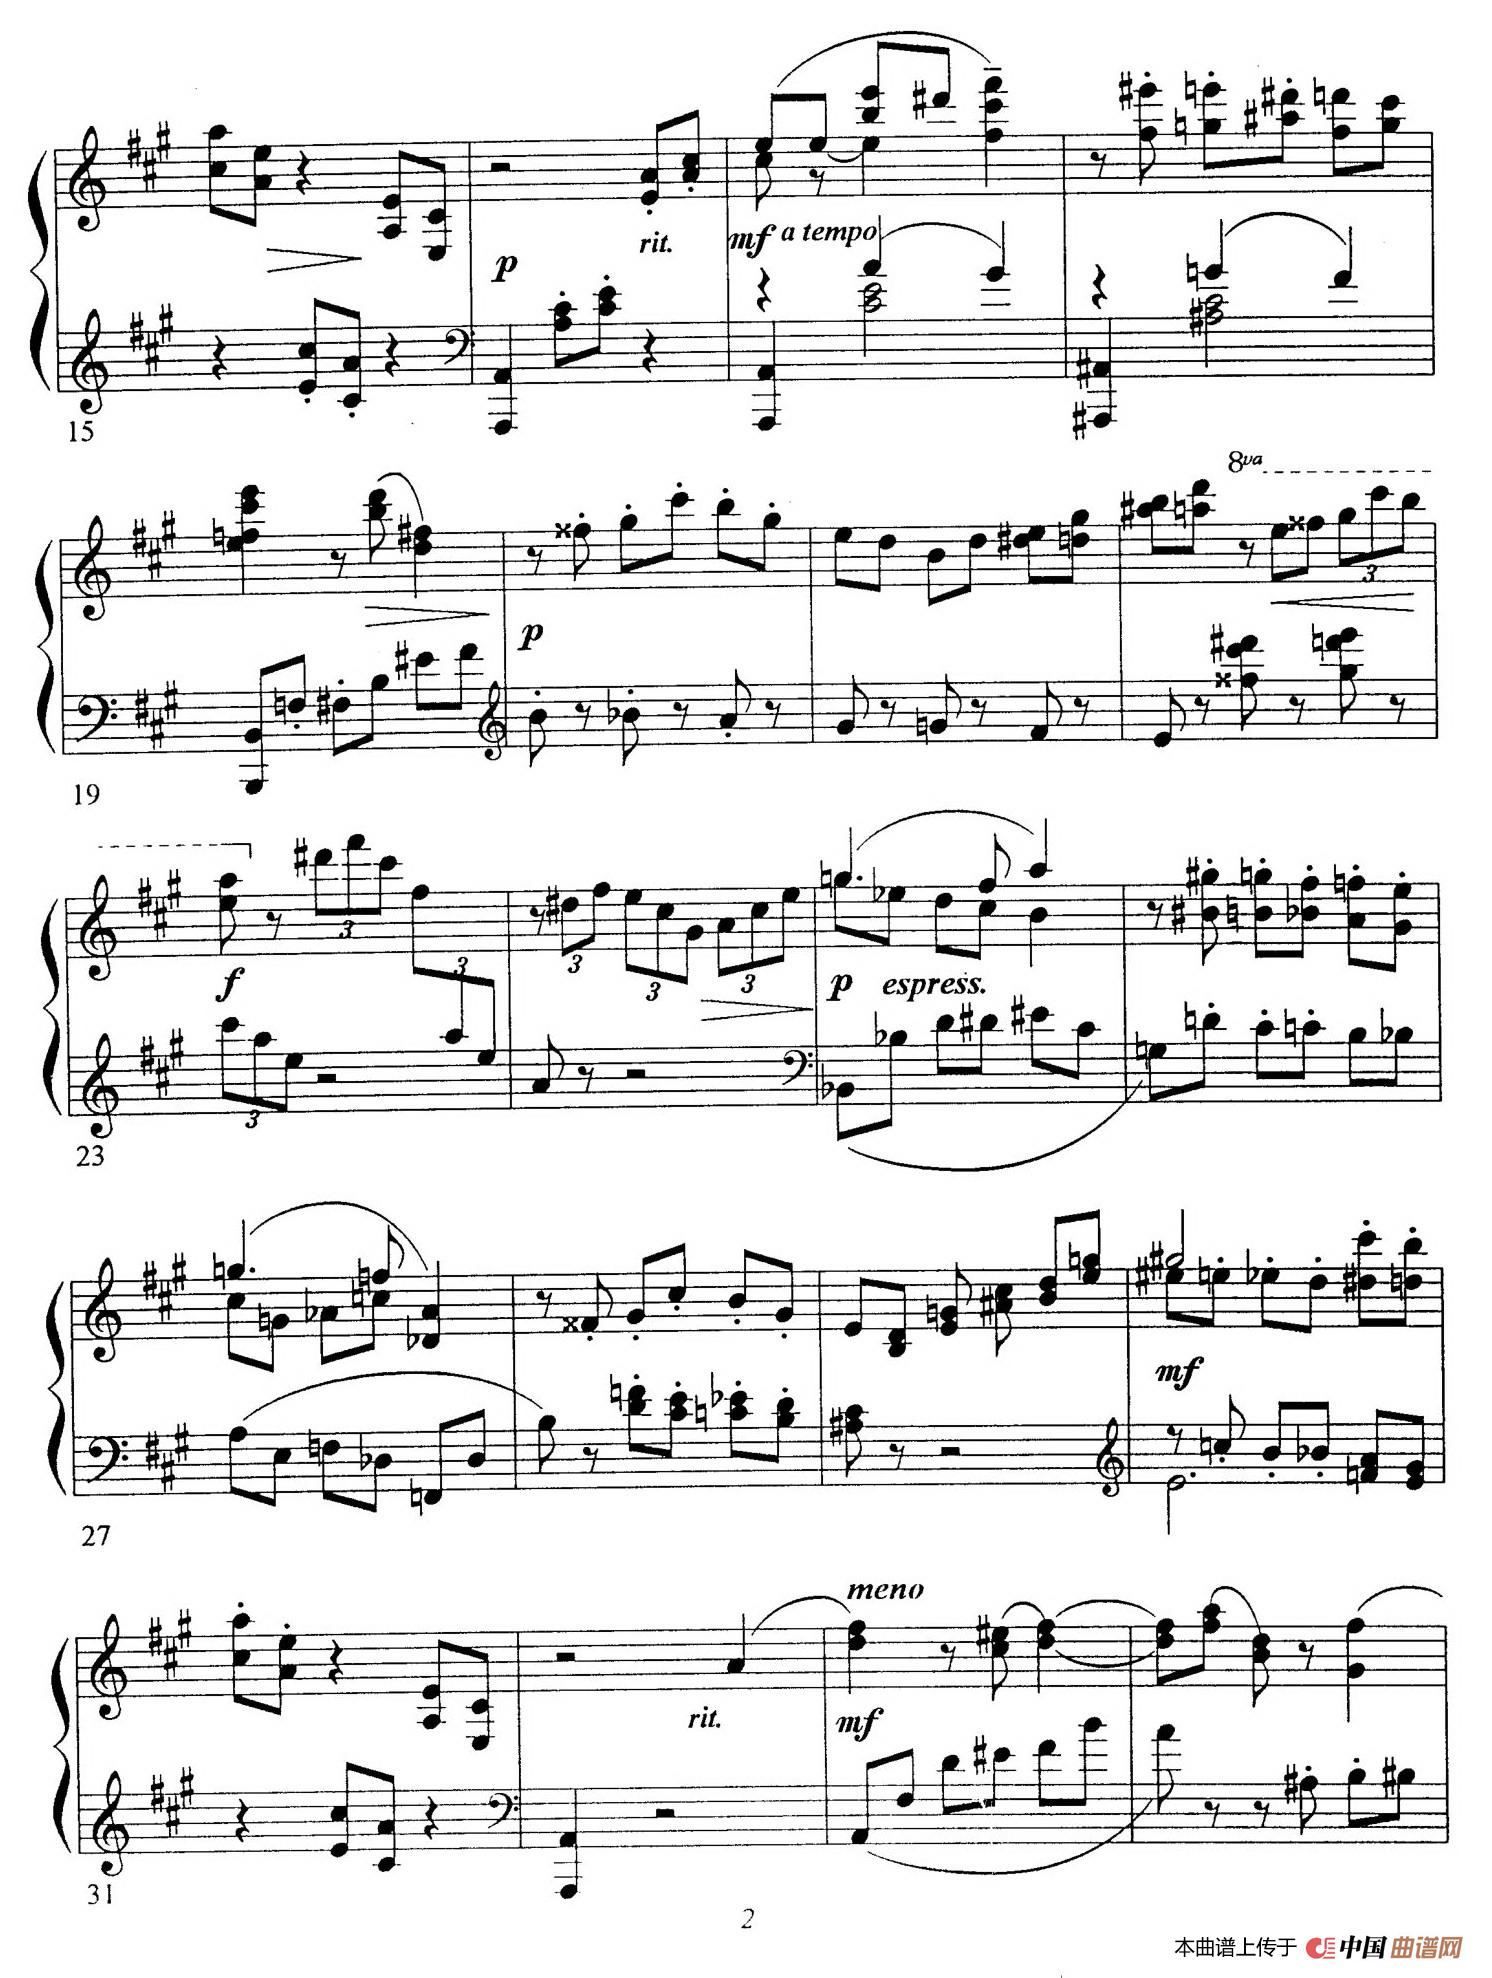 《Schon Rosmarin》钢琴曲谱图分享